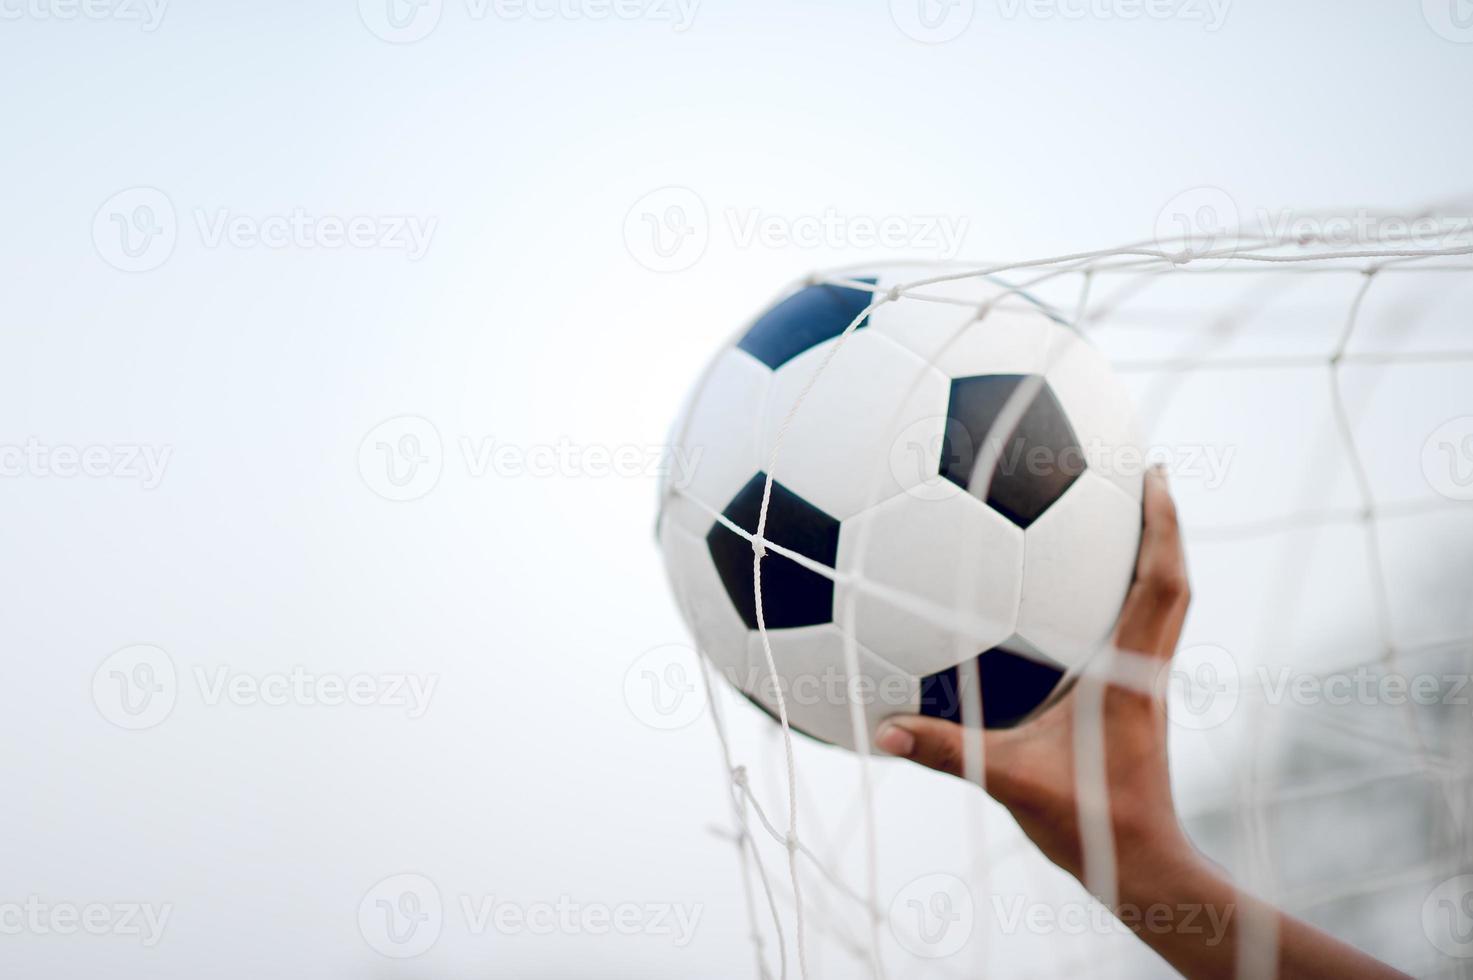 la imagen recortada de deportistas que atrapan la pelota y el campo de fútbol. concepto de imagen deportiva. foto